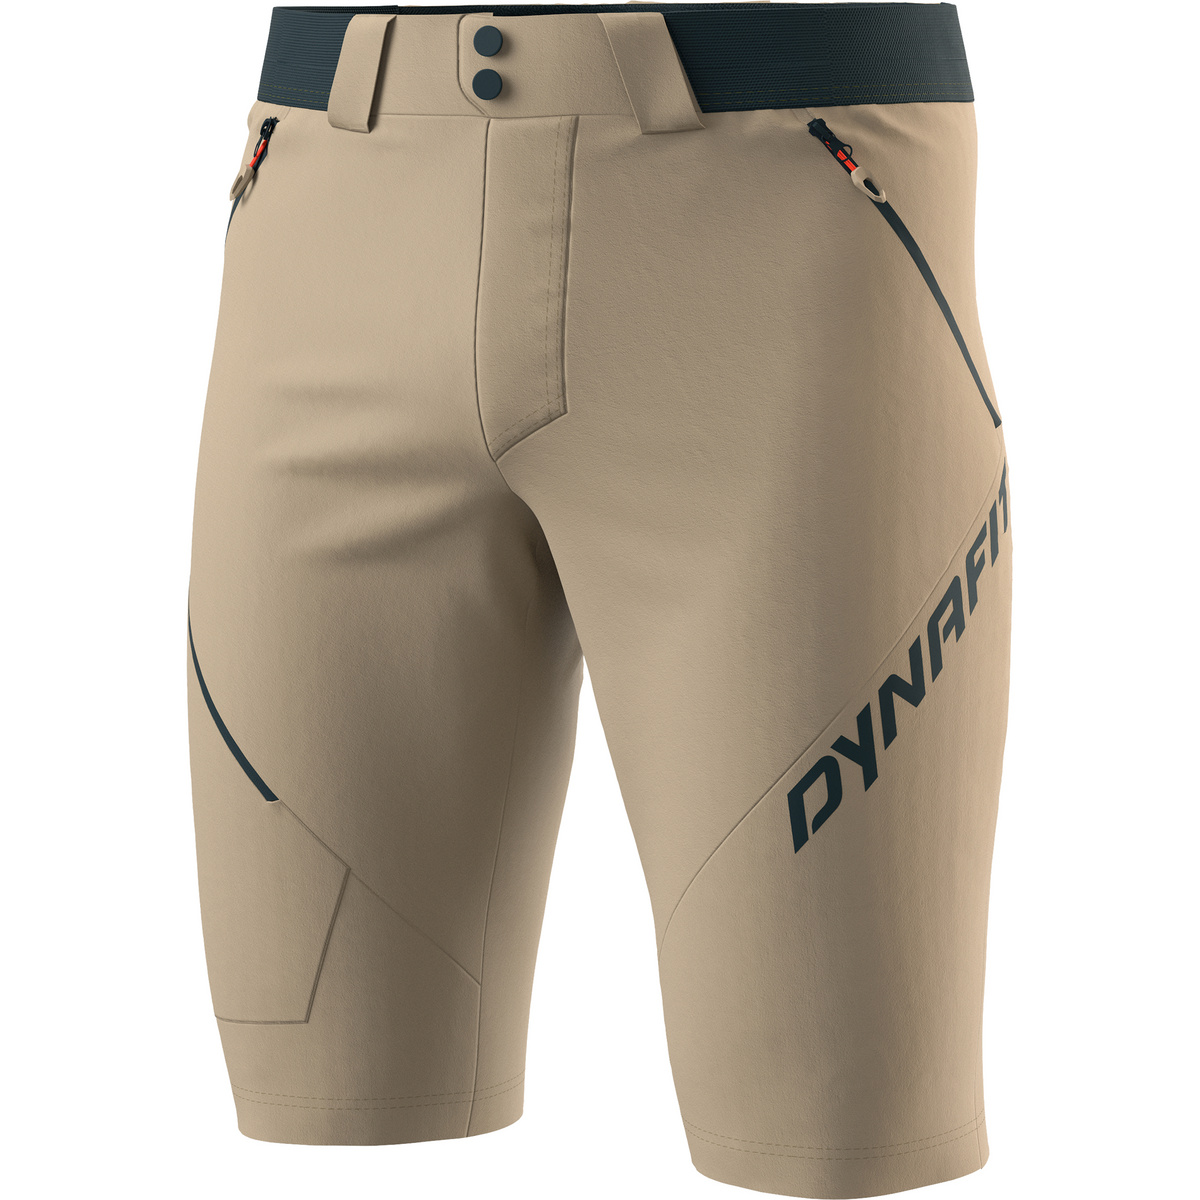 Dynafit Herren Transalper 4 DST Shorts von Dynafit